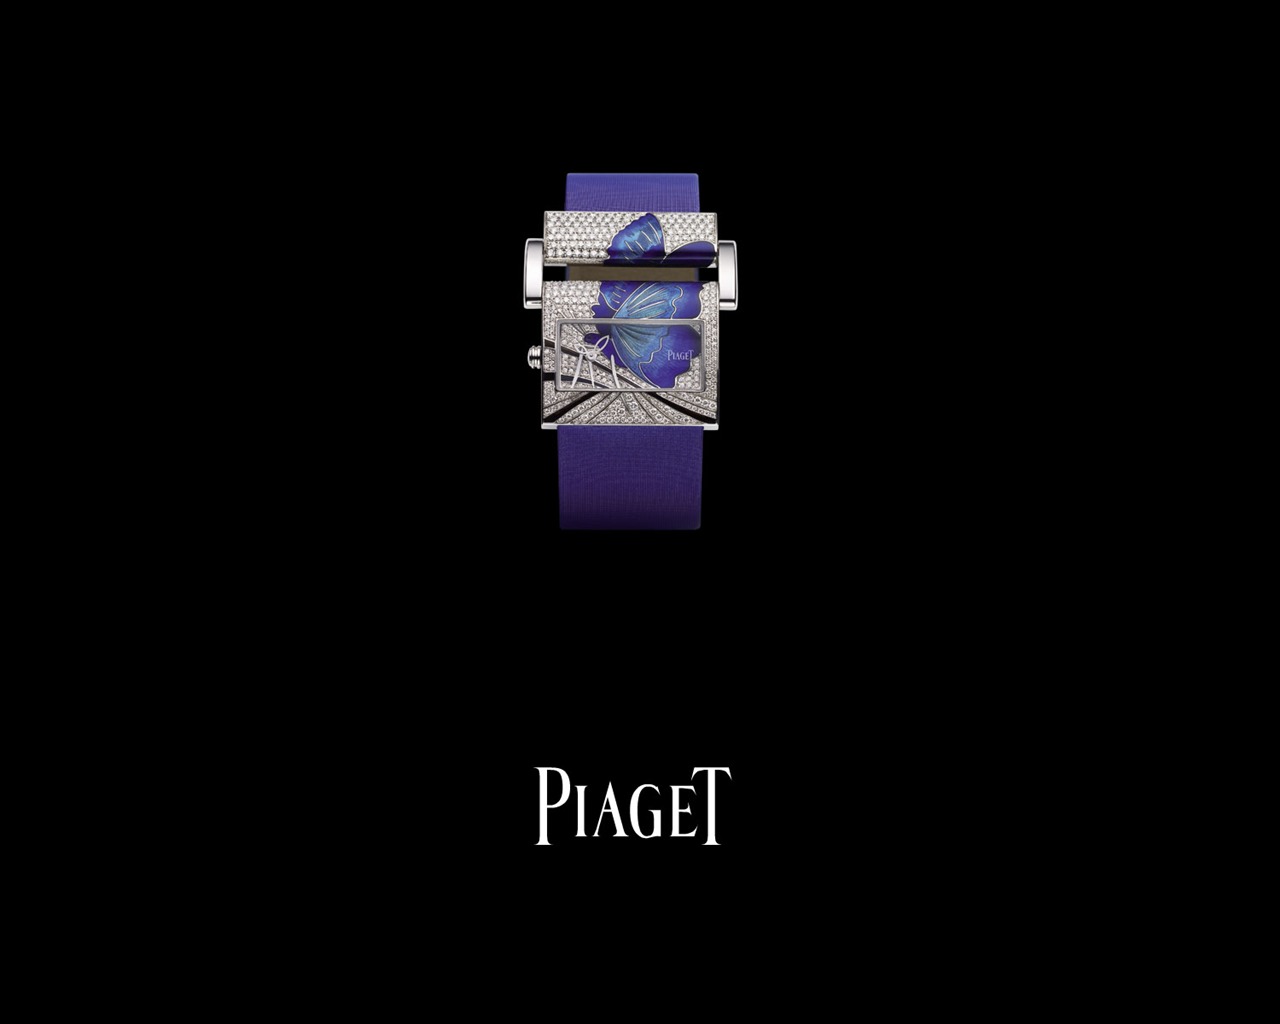 피아제 다이아몬드 시계 벽지 (3) #1 - 1280x1024